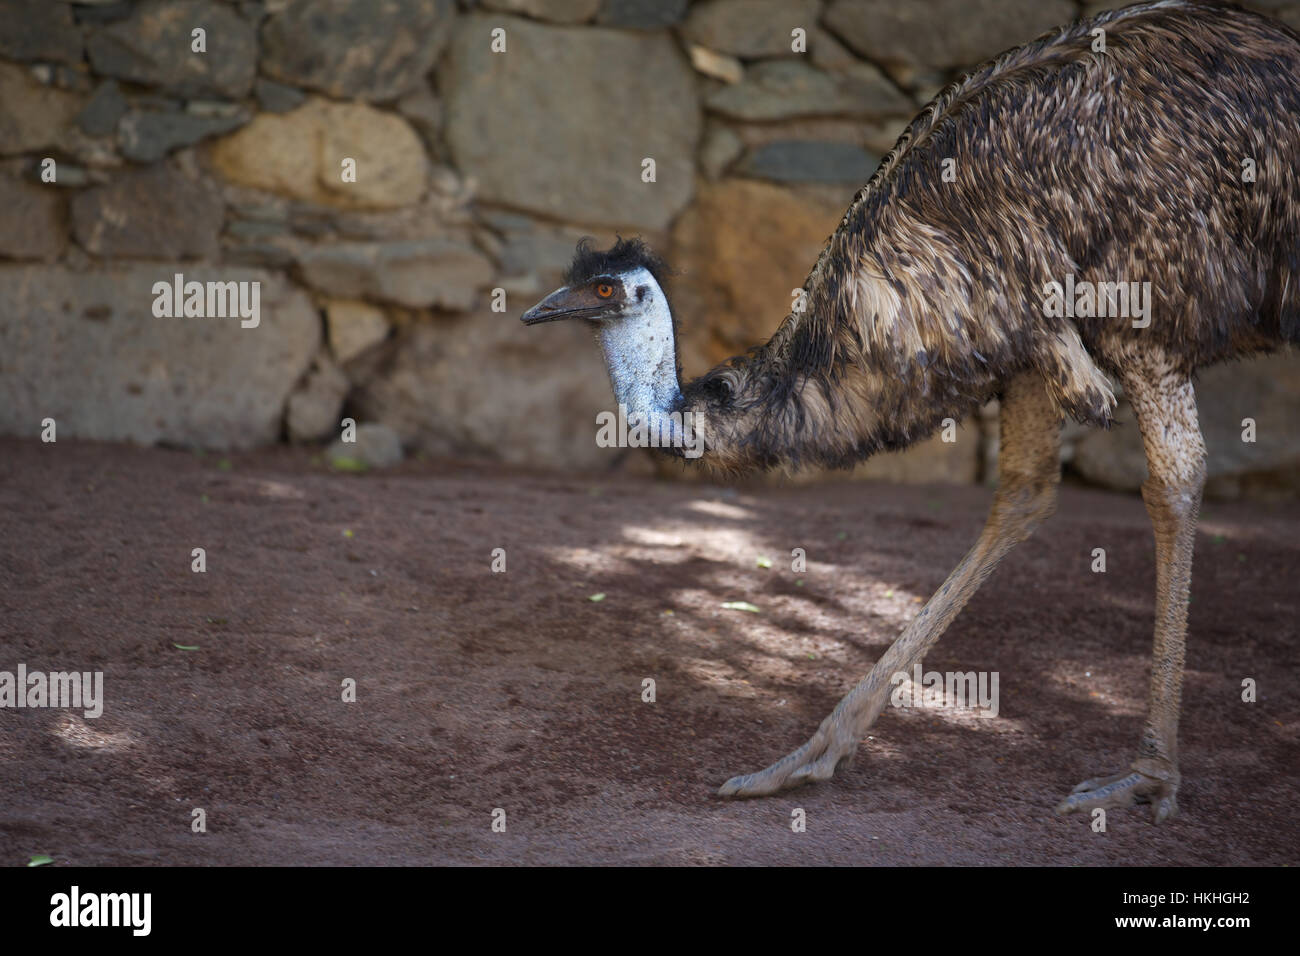 emu at zoo. flightless, bird, nature, beak. Stock Photo